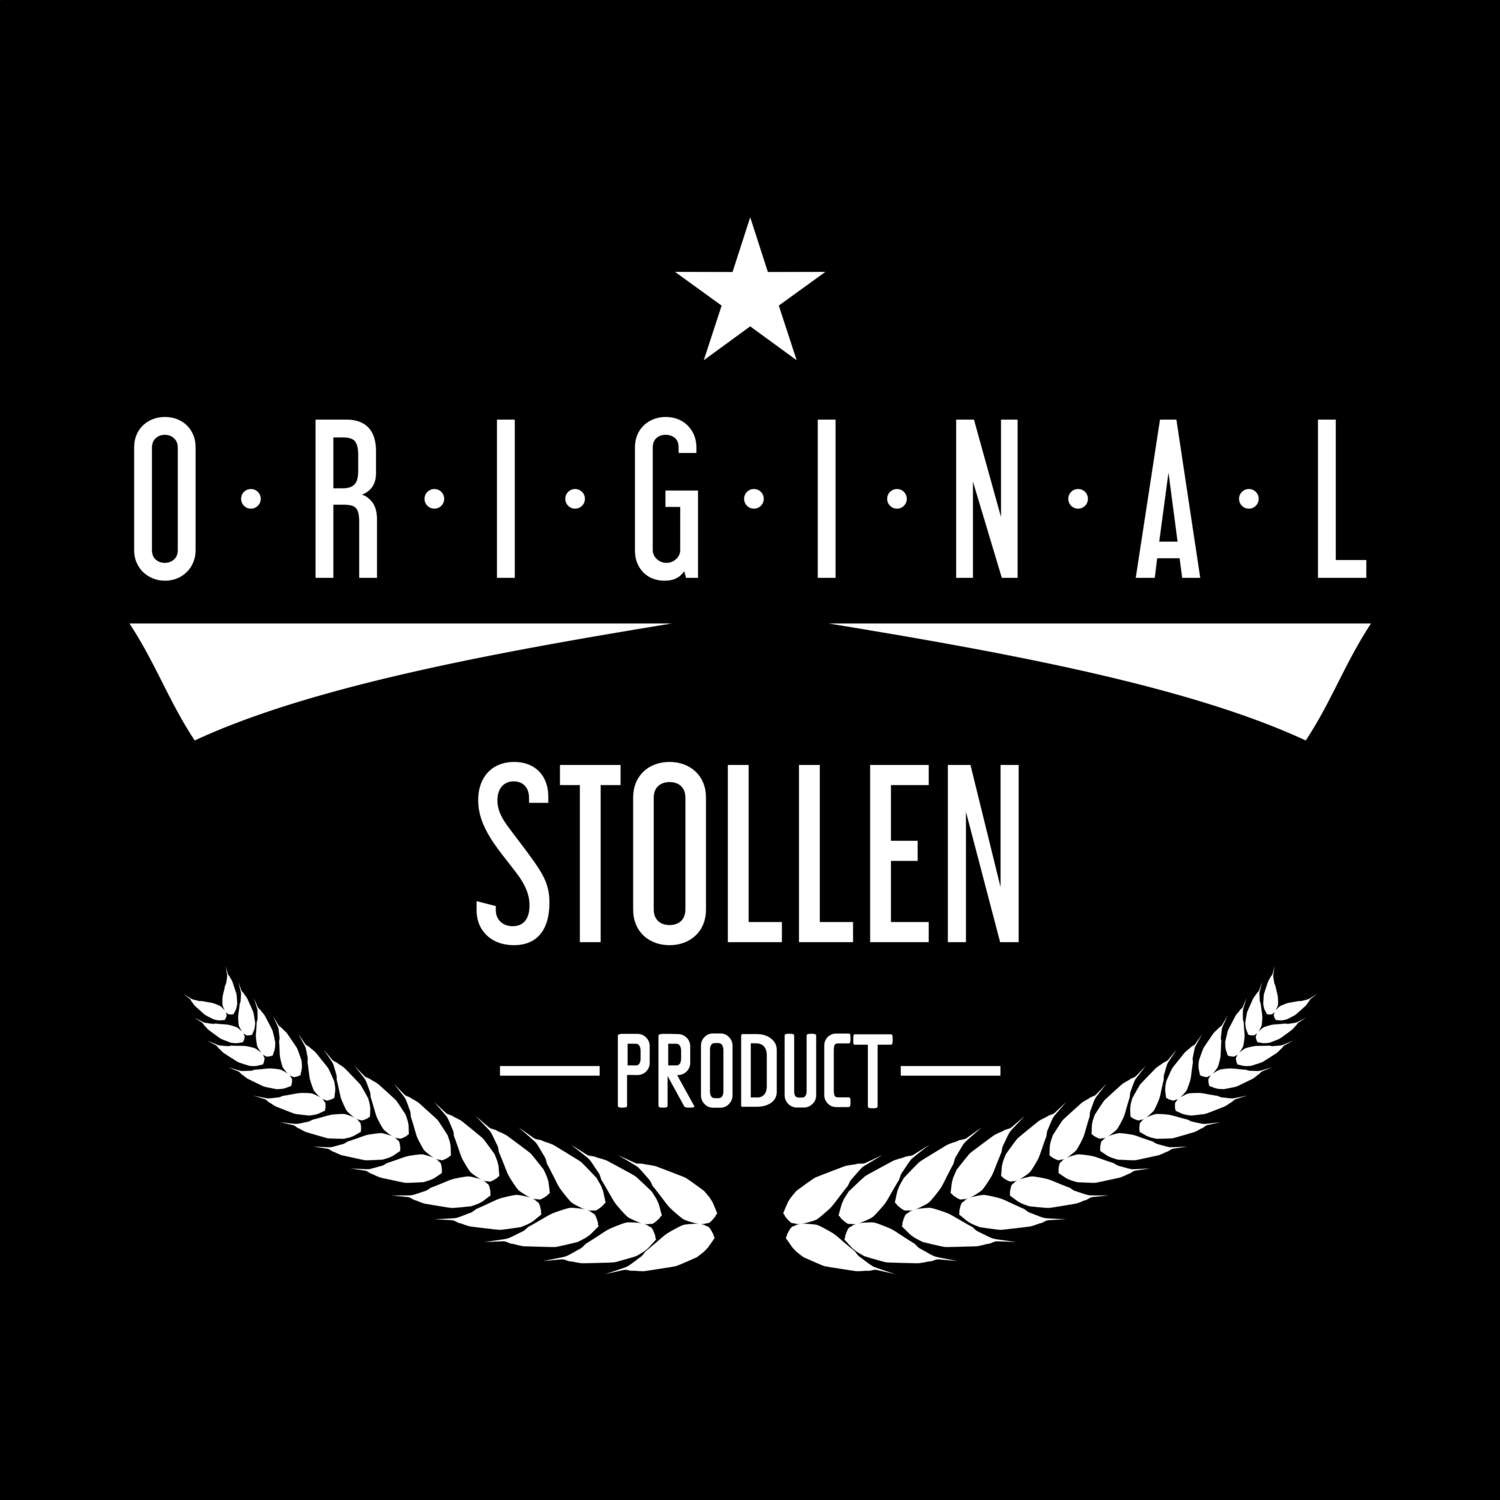 Stollen T-Shirt »Original Product«